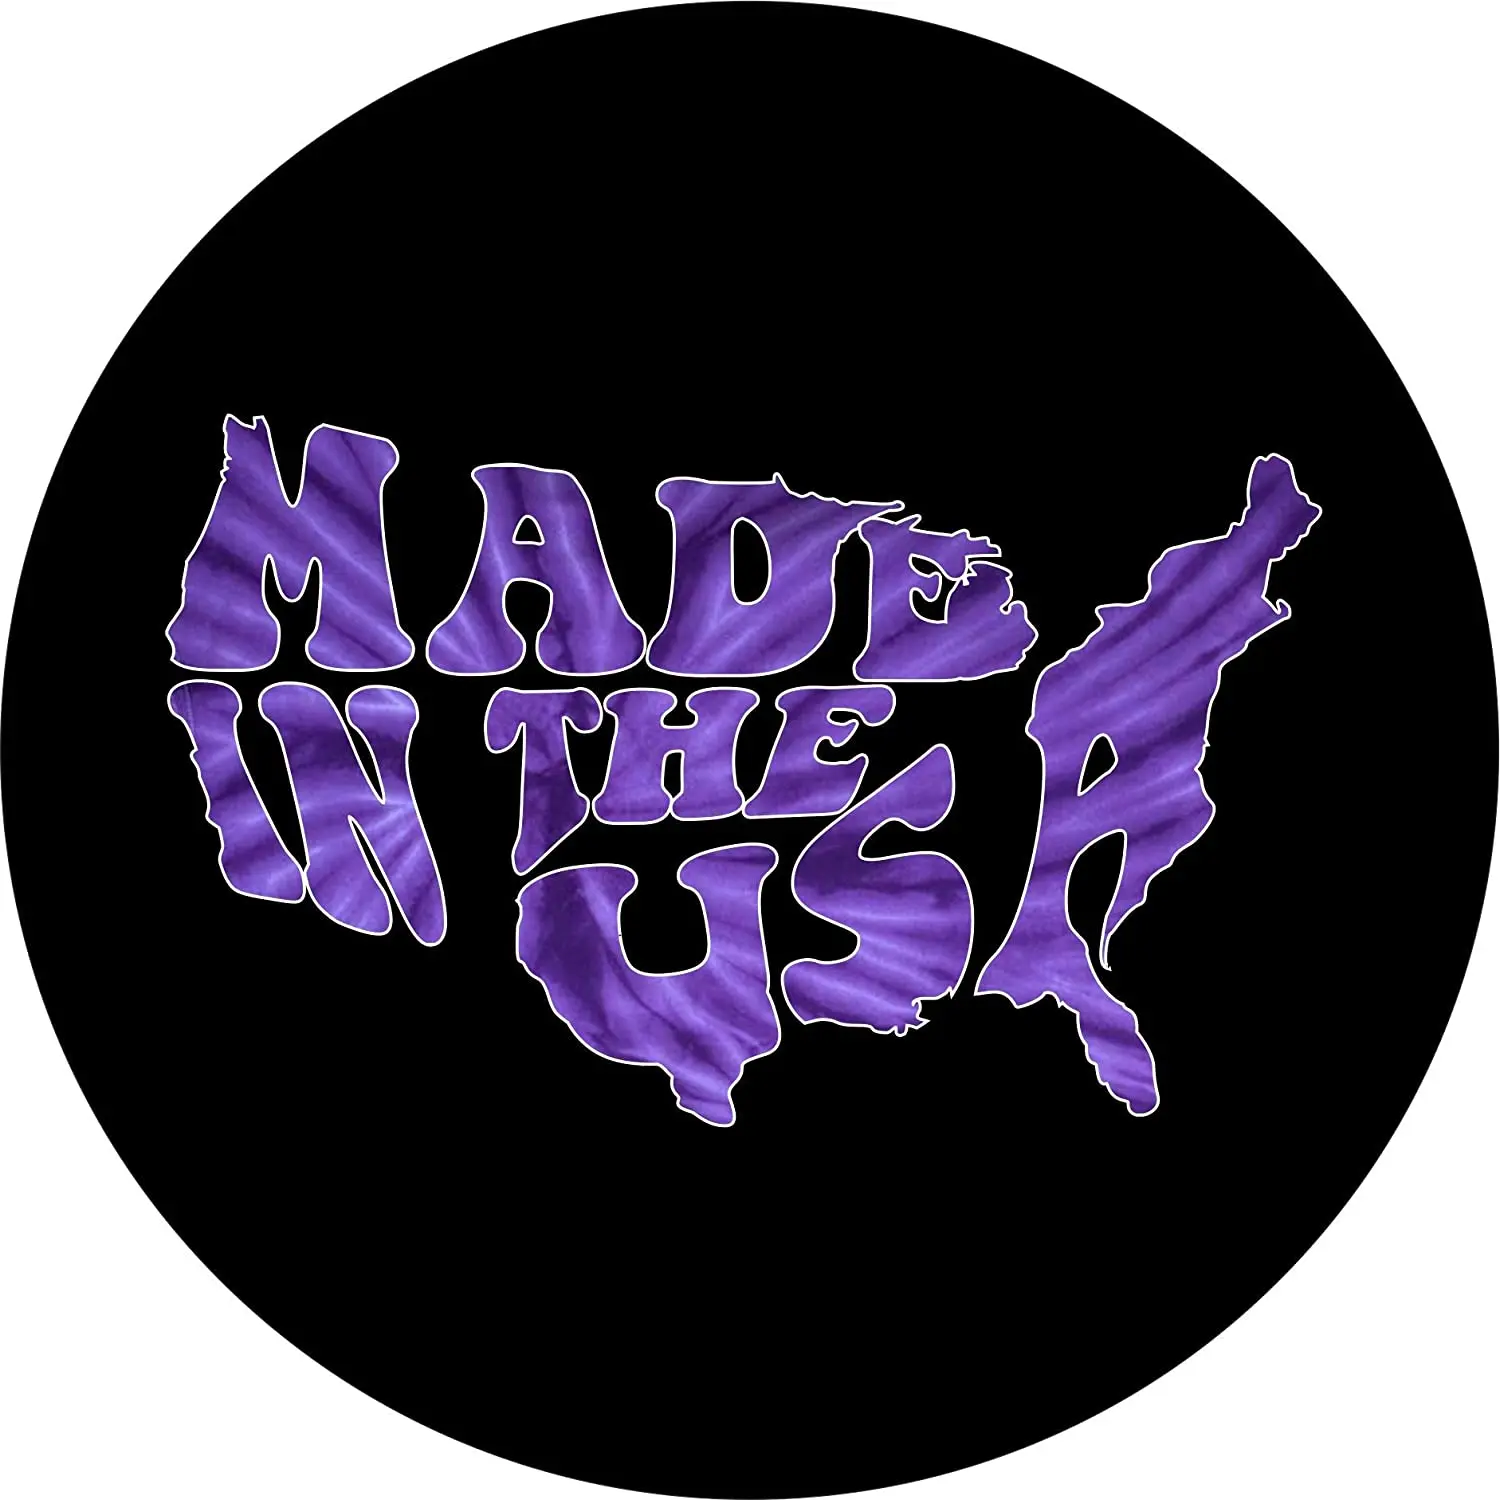 

Крышка шины центральное слово искусство Сделано в США Фиолетовый Tie Dye запасная крышка шины (255/75r17 открытие резервной камеры)